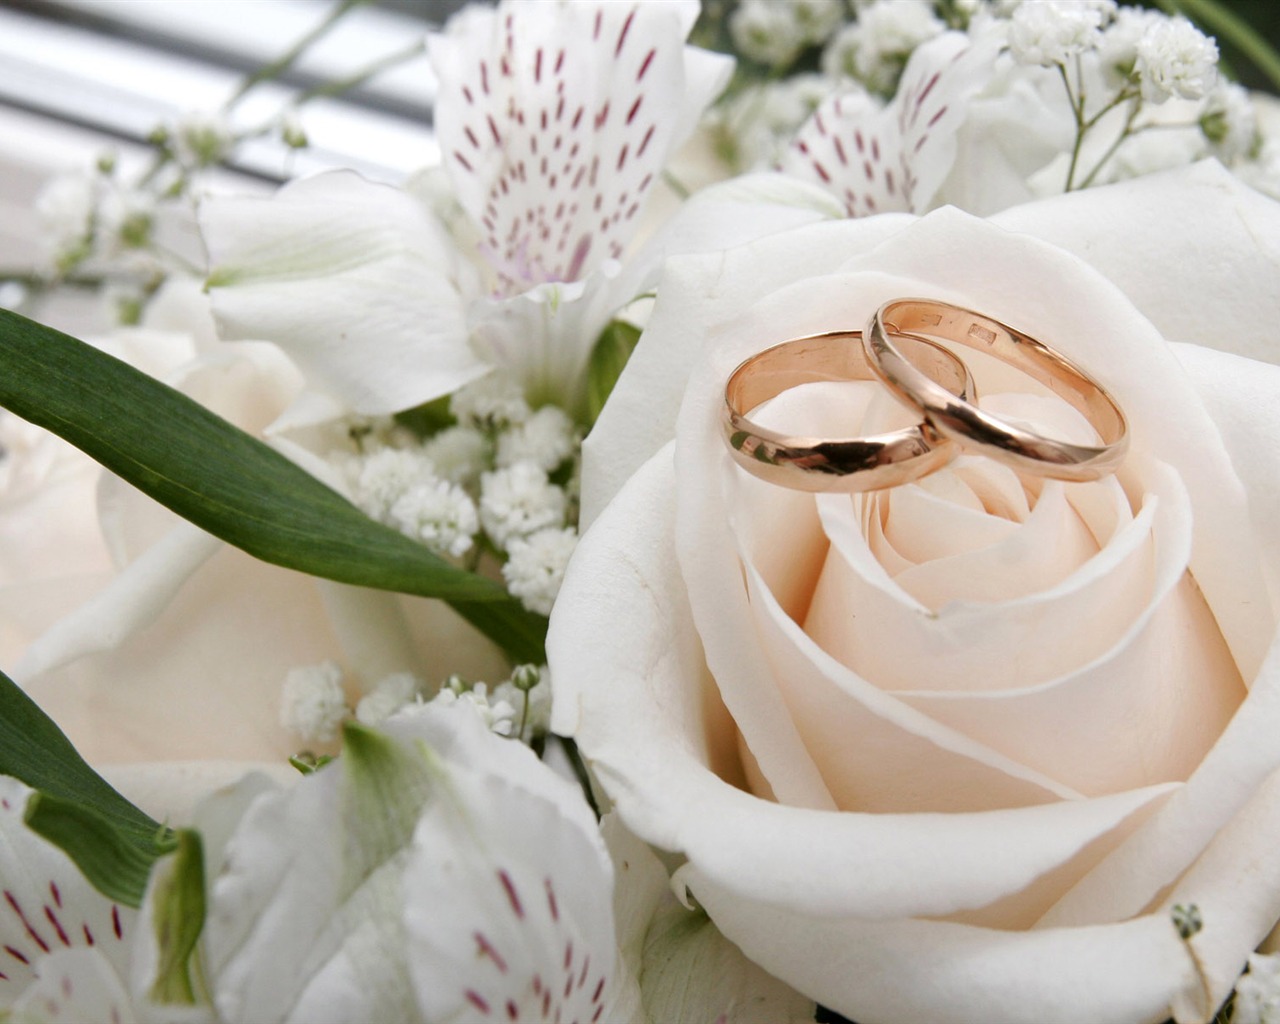 Mariage et papier peint anneau de mariage (1) #2 - 1280x1024